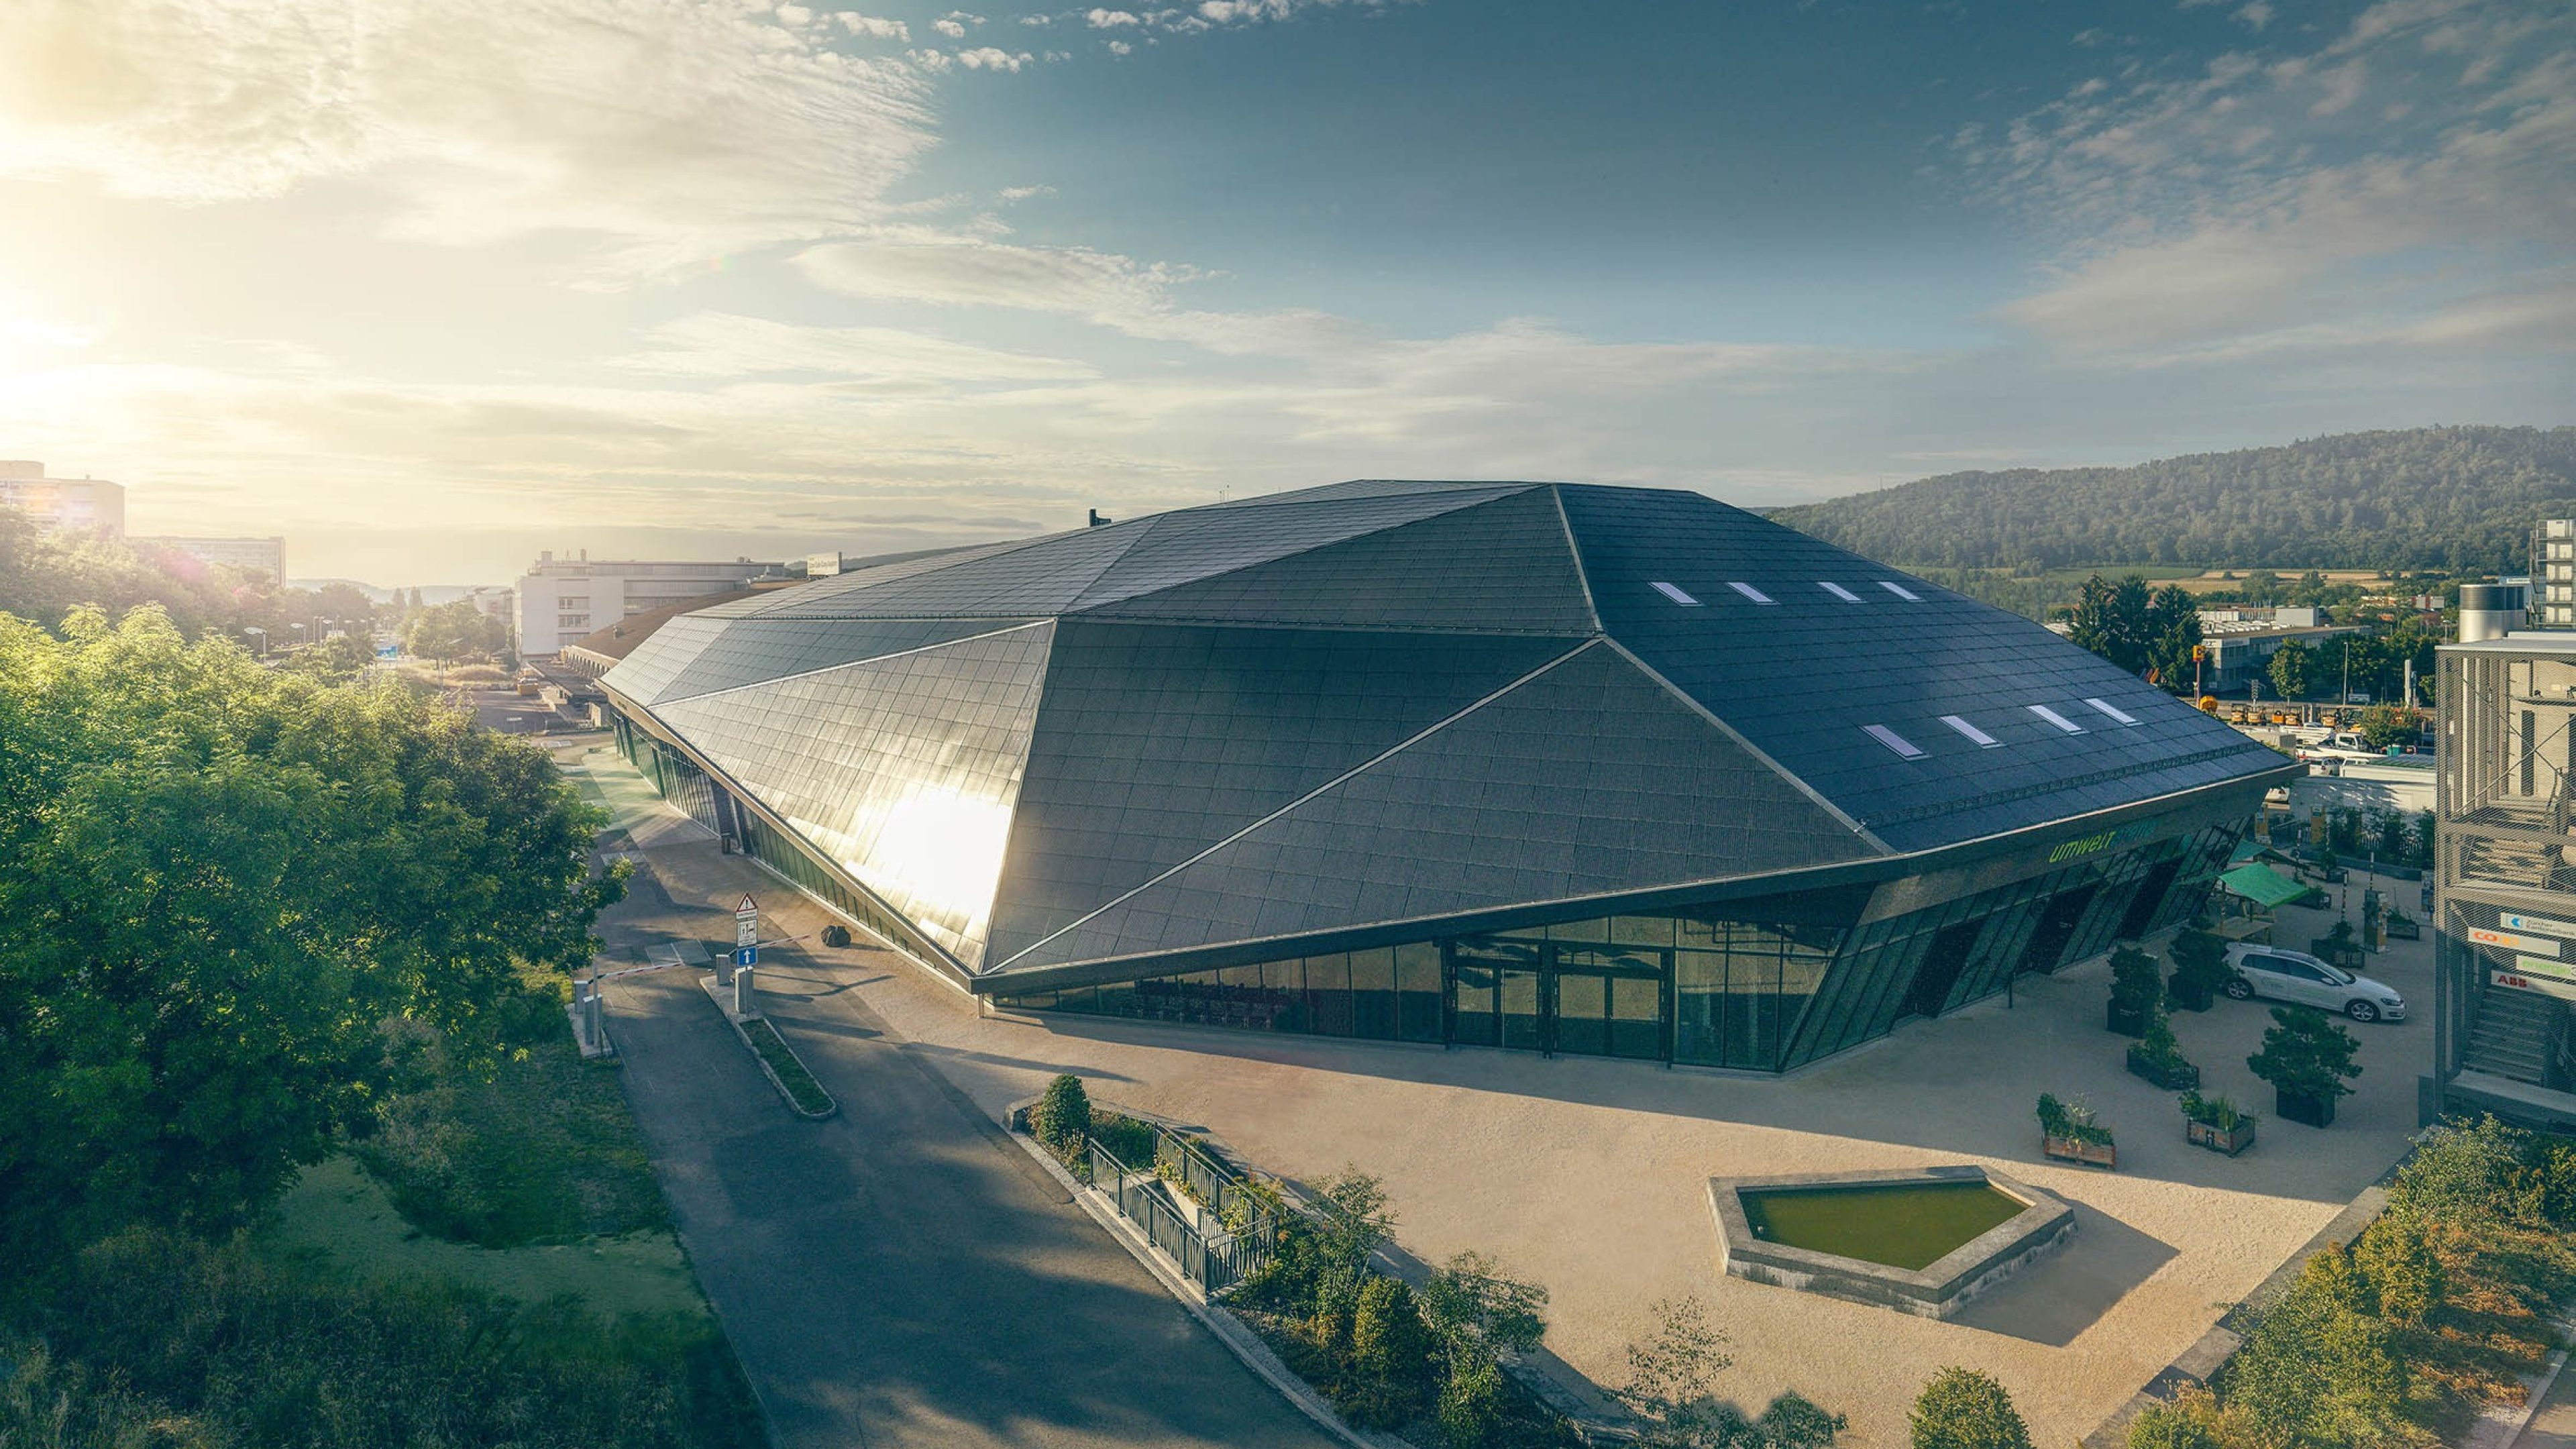 Sicht von oben auf die Umwelt Arena mit ihrem grossen Solar-Dach.